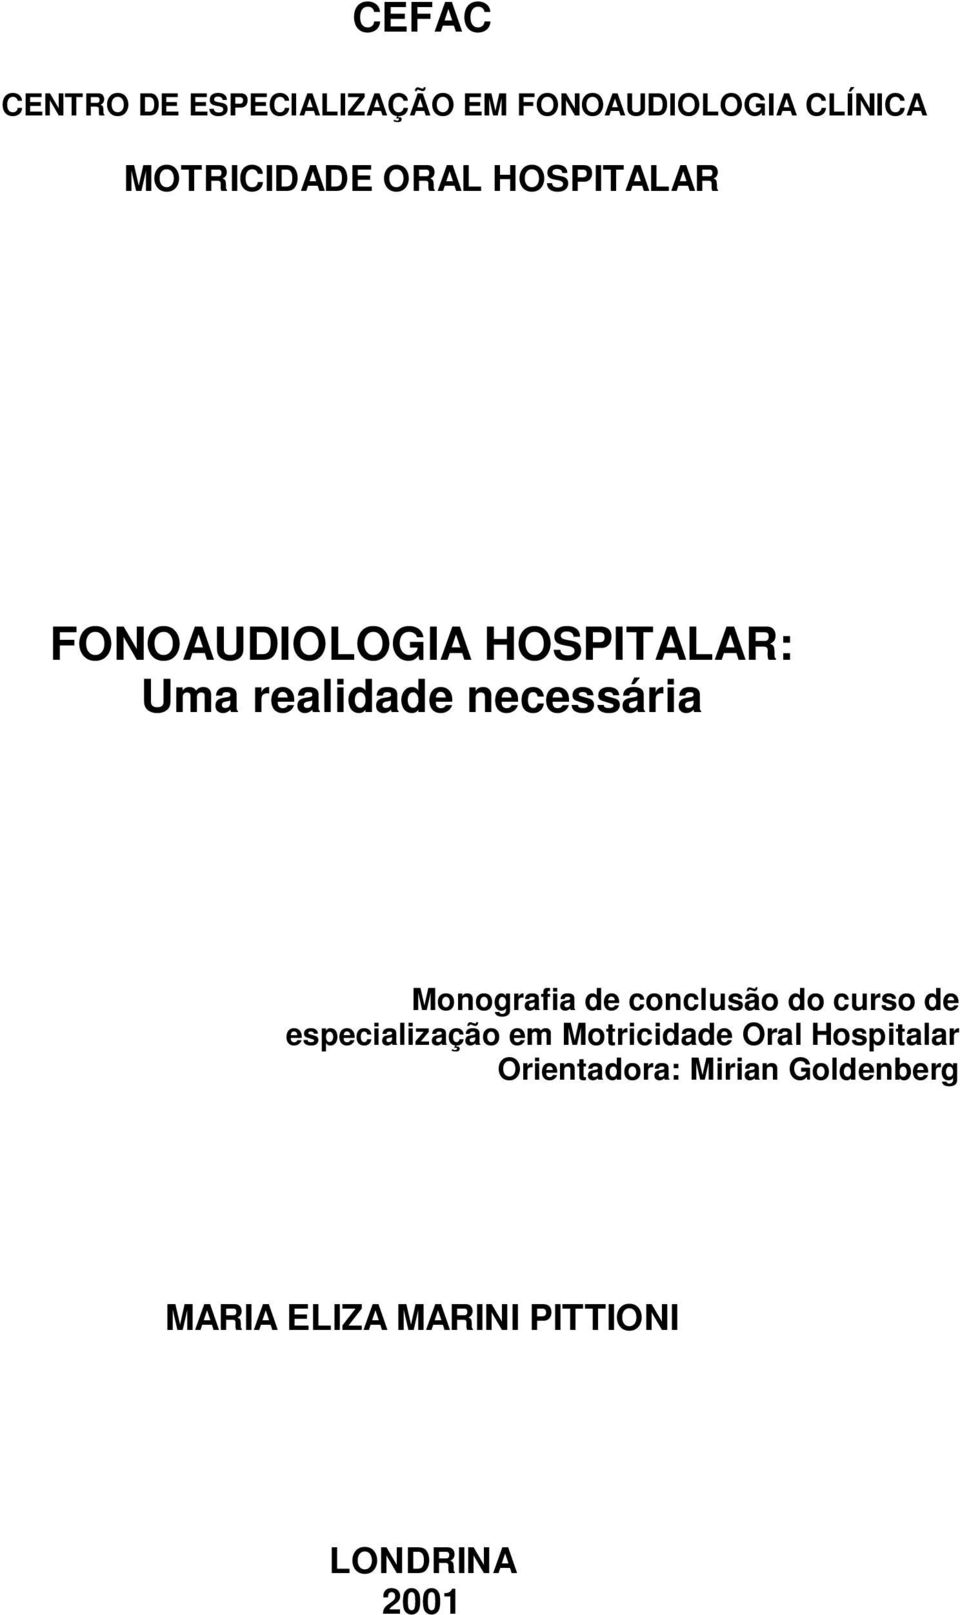 Monografia de conclusão do curso de especialização em Motricidade Oral